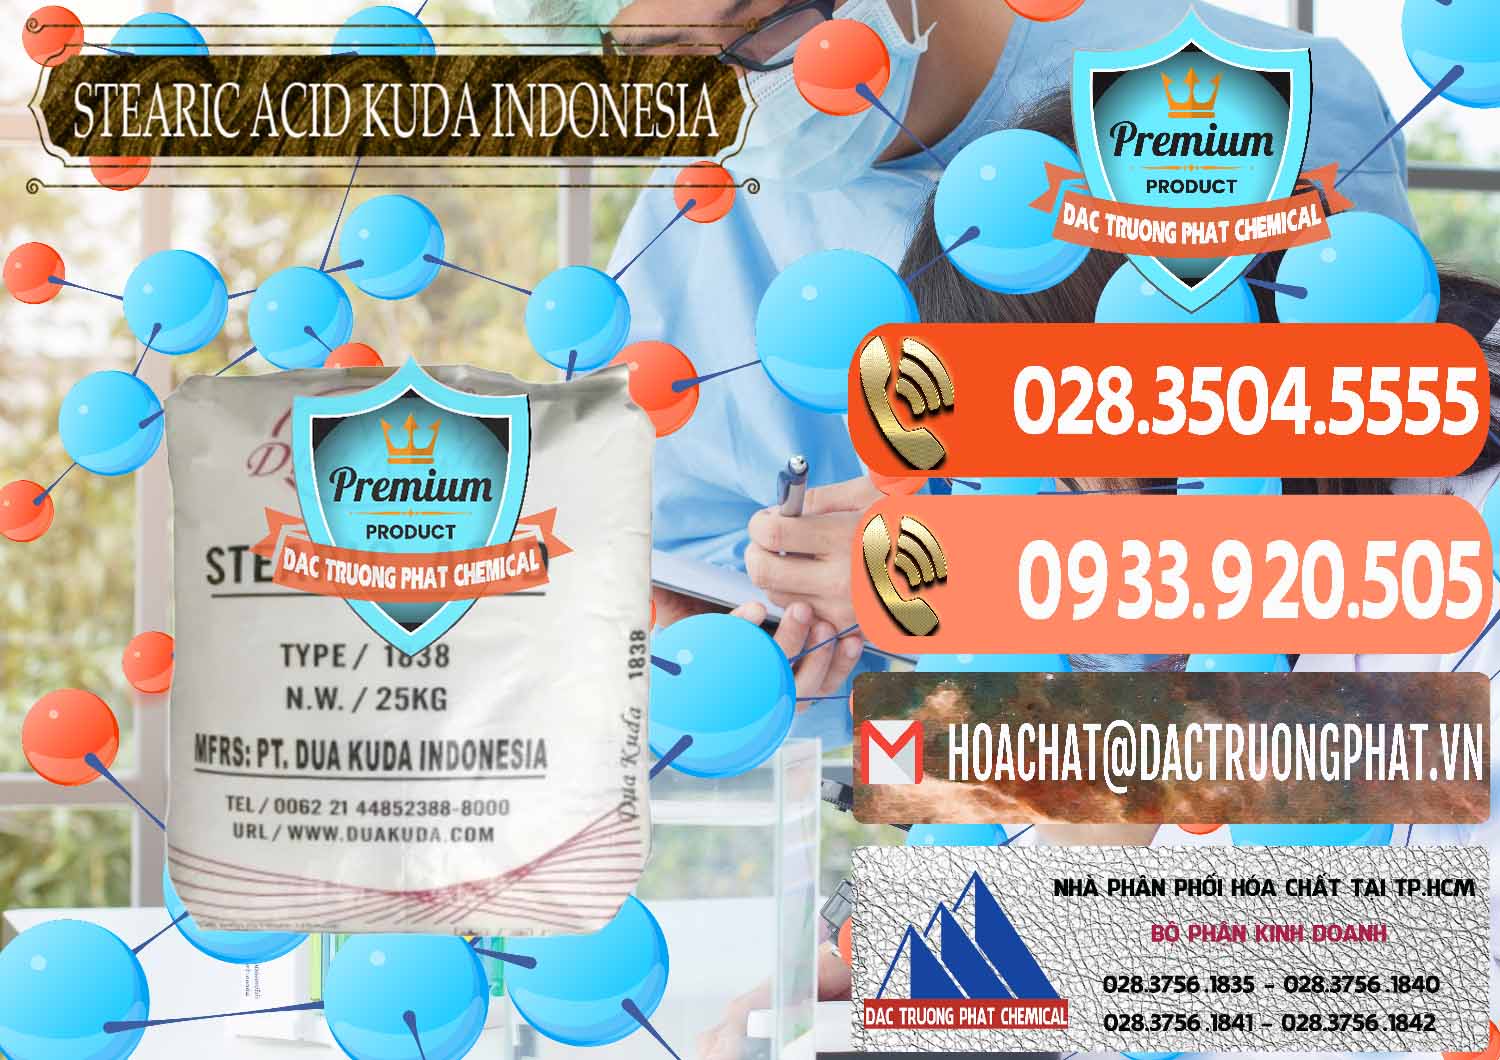 Cty chuyên bán & cung cấp Axit Stearic - Stearic Acid Dua Kuda Indonesia - 0388 - Chuyên kinh doanh - cung cấp hóa chất tại TP.HCM - hoachatmientay.com